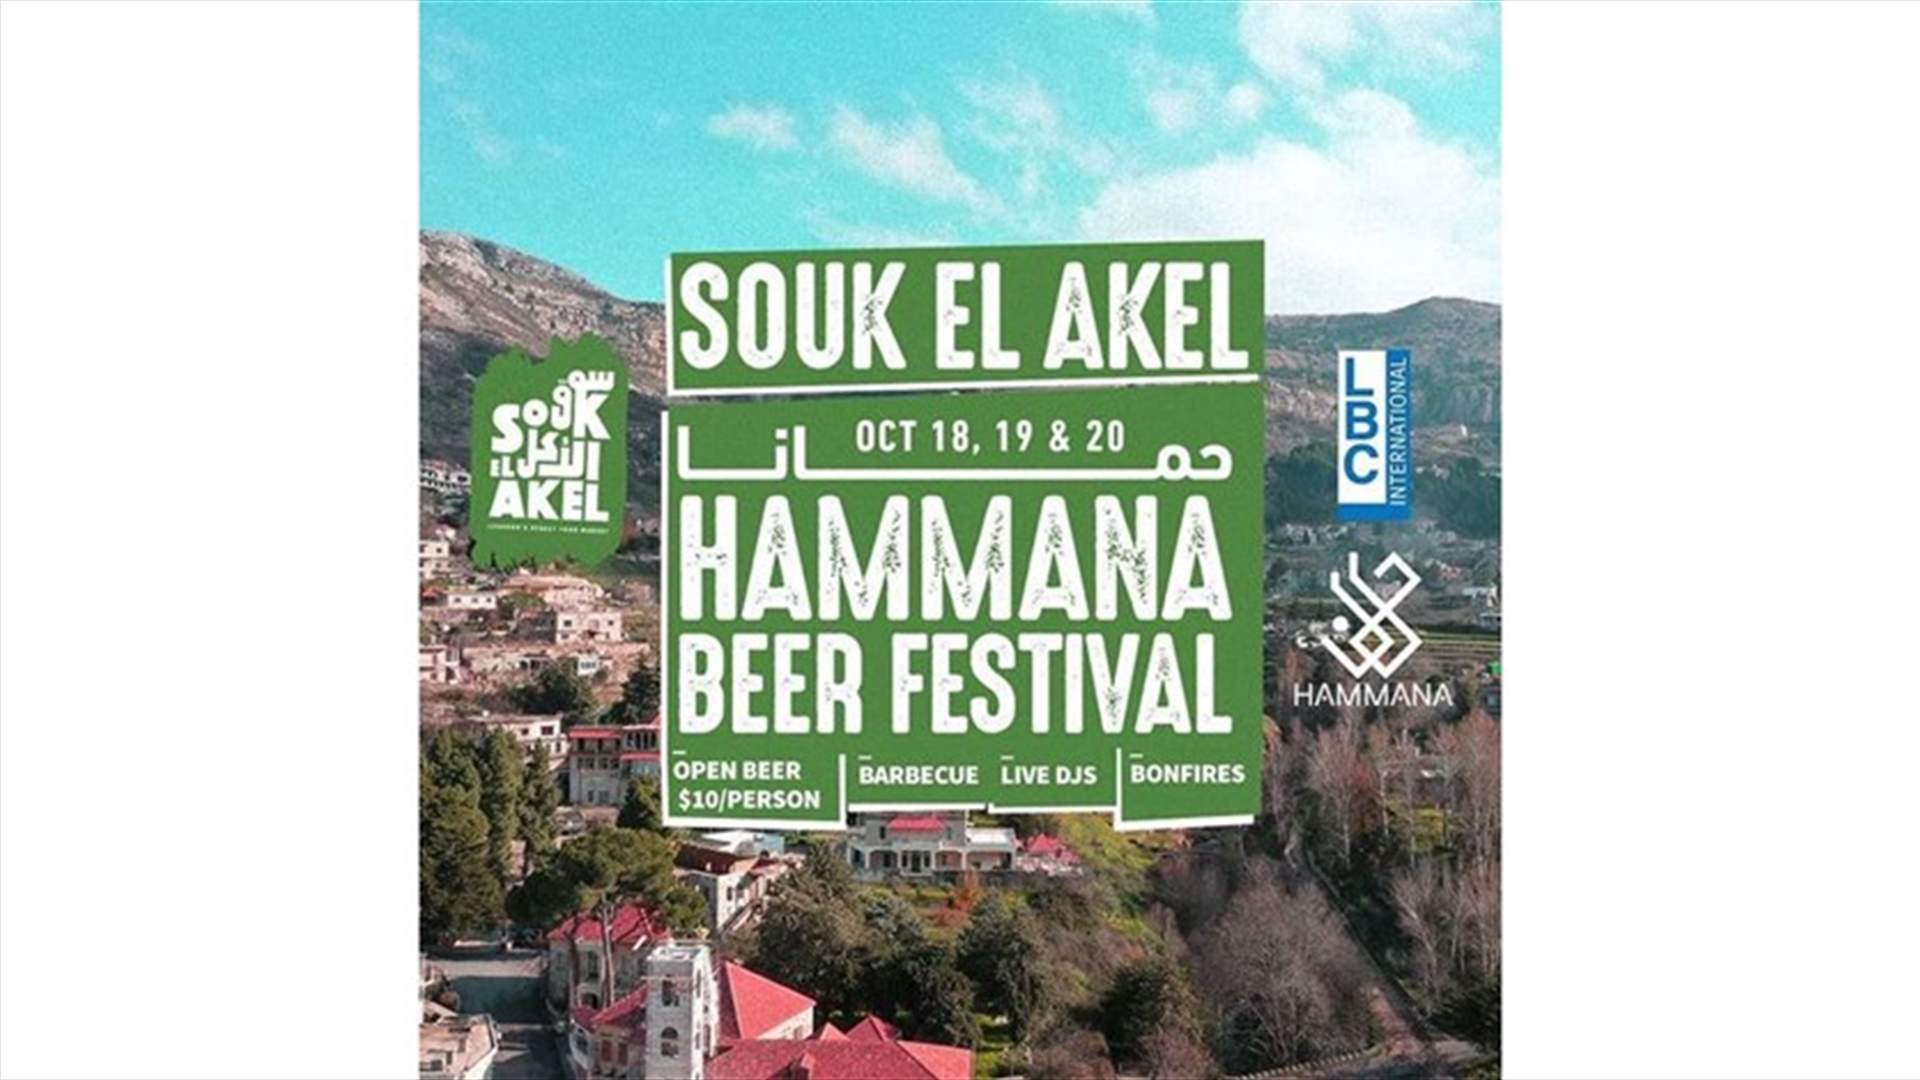 في حمانا... استعدادات لاستضافة سوق الأكل ومهرجان البيرة على مدى 3 أيام!